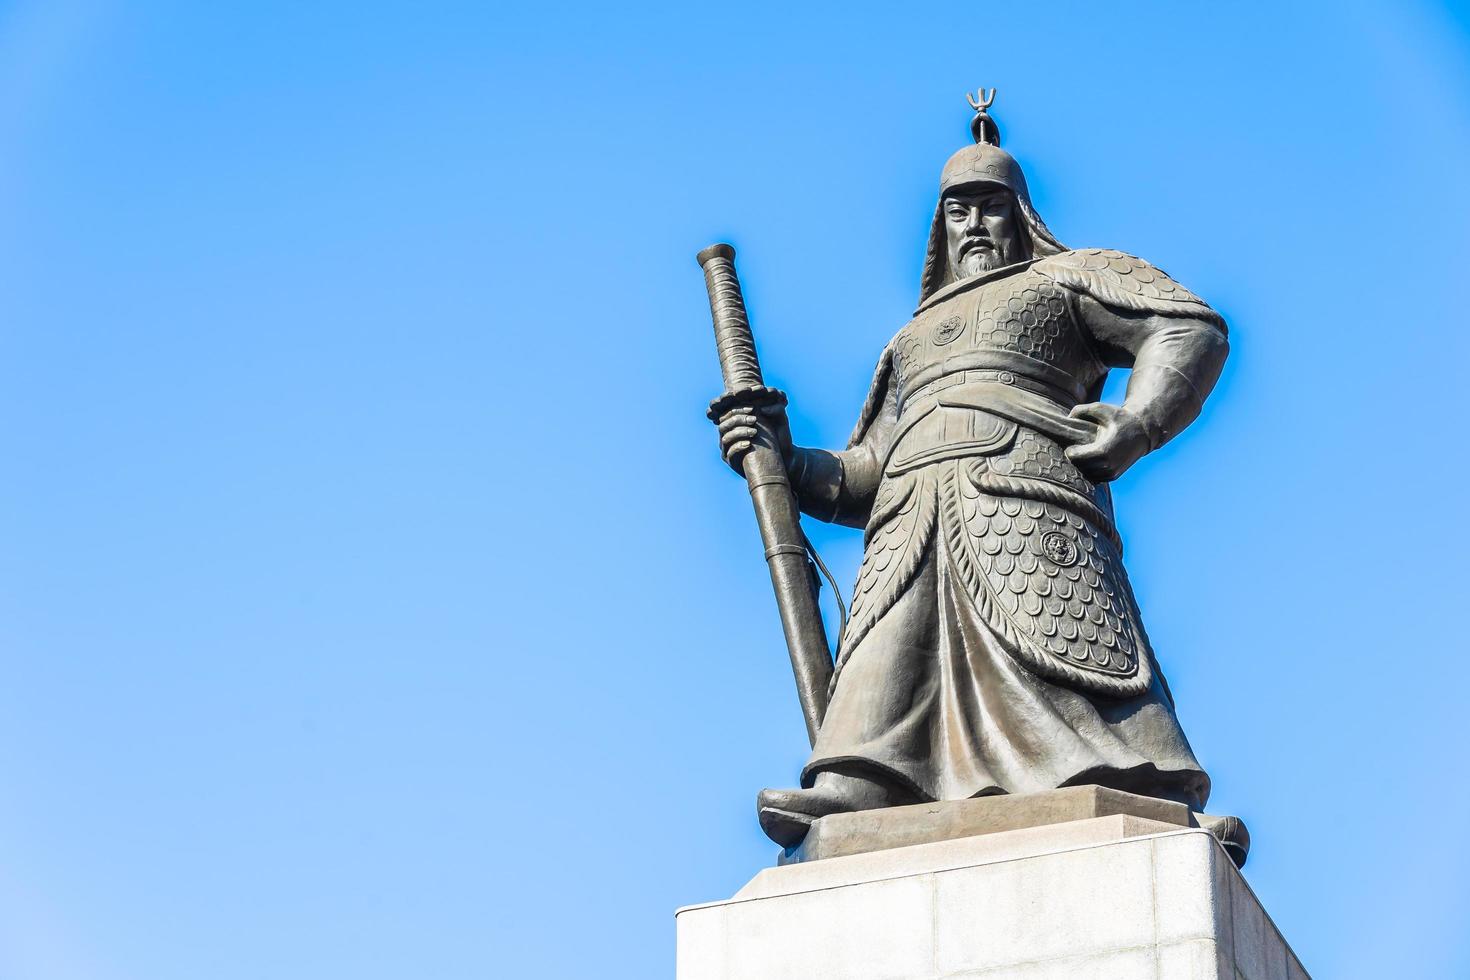 statua dell'ammiraglio yi sun shin nella città di seoul corea del sud foto